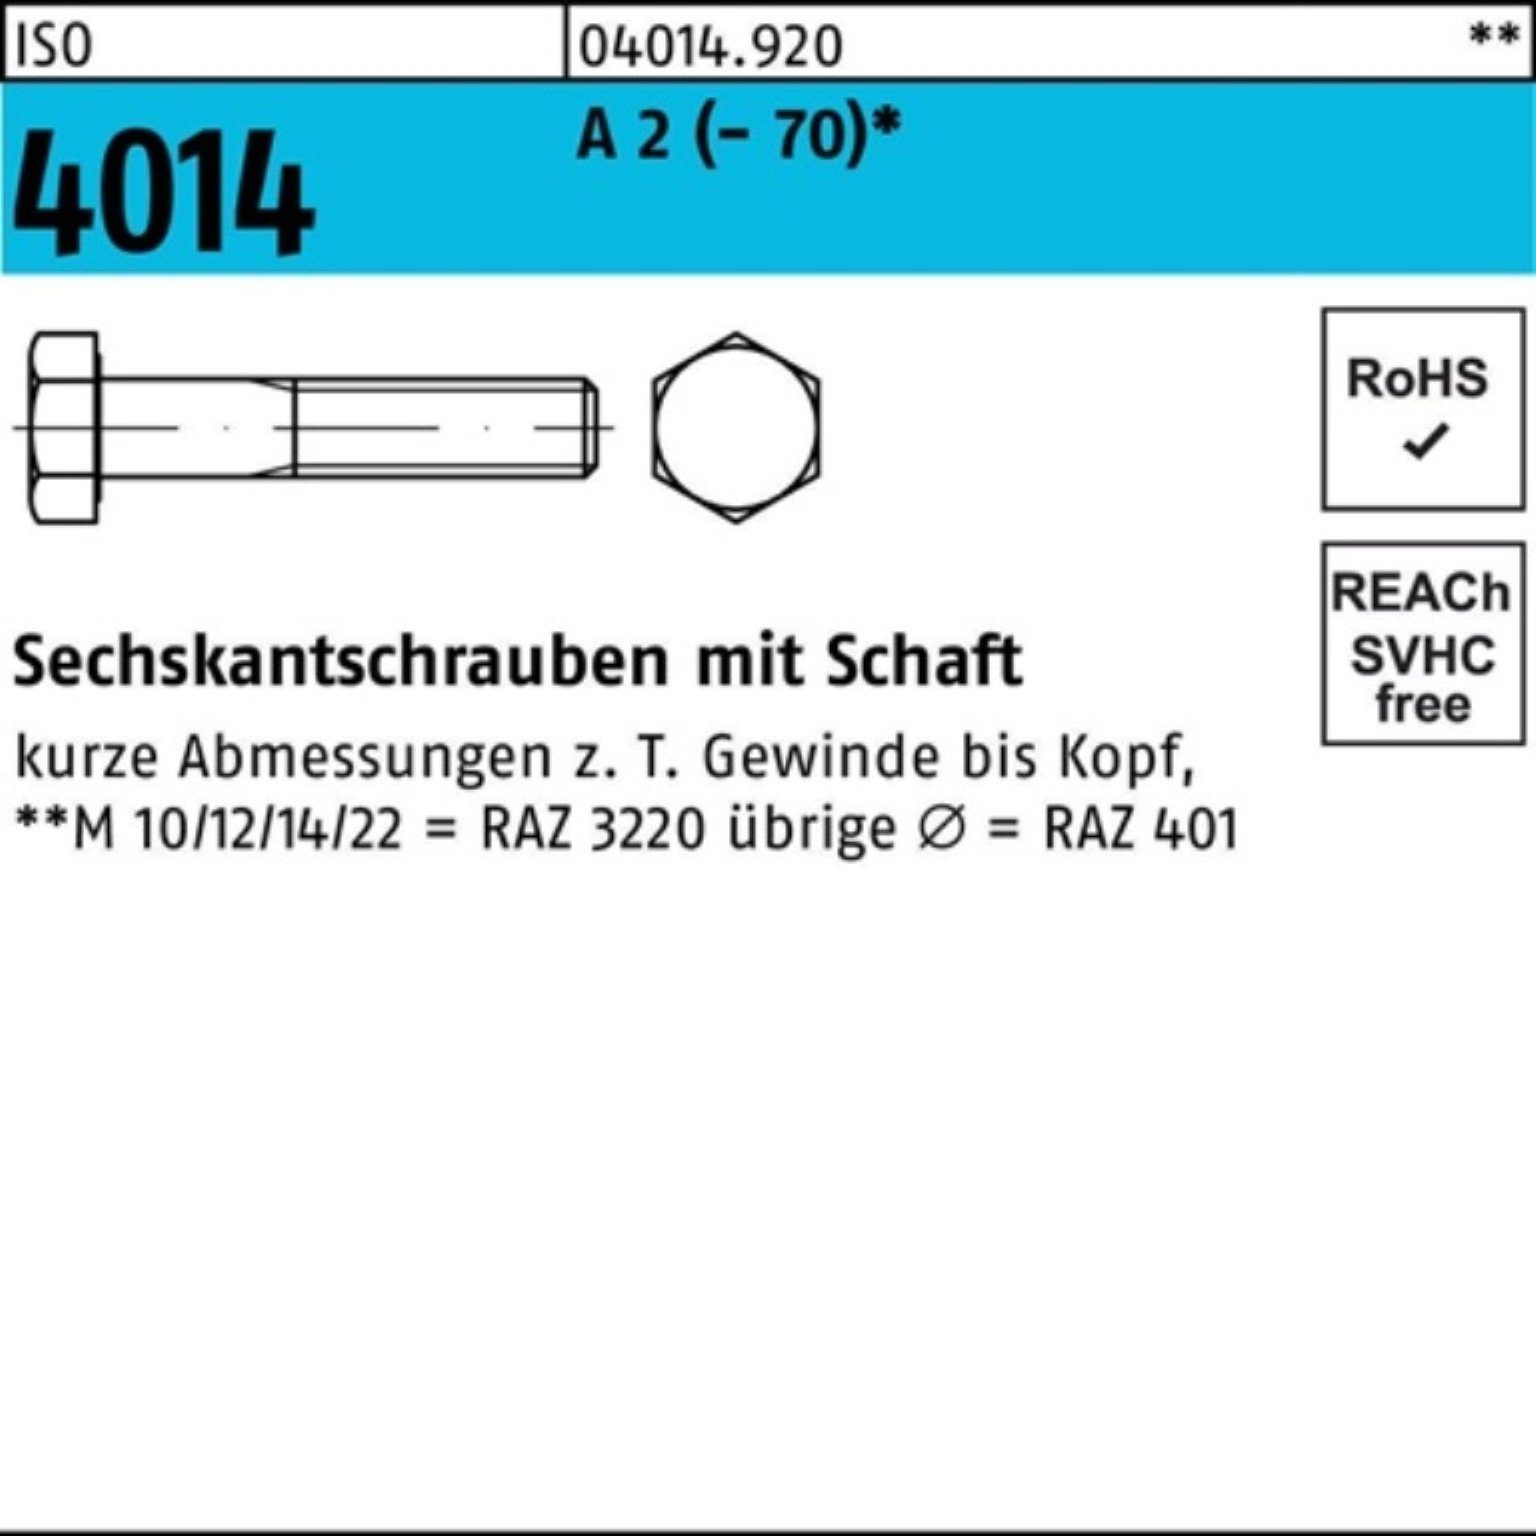 Sechskantschraube 4014 2 ISO Bufab 100er Stück Pack Sechskantschraube M30x A ISO 170 1 Schaft